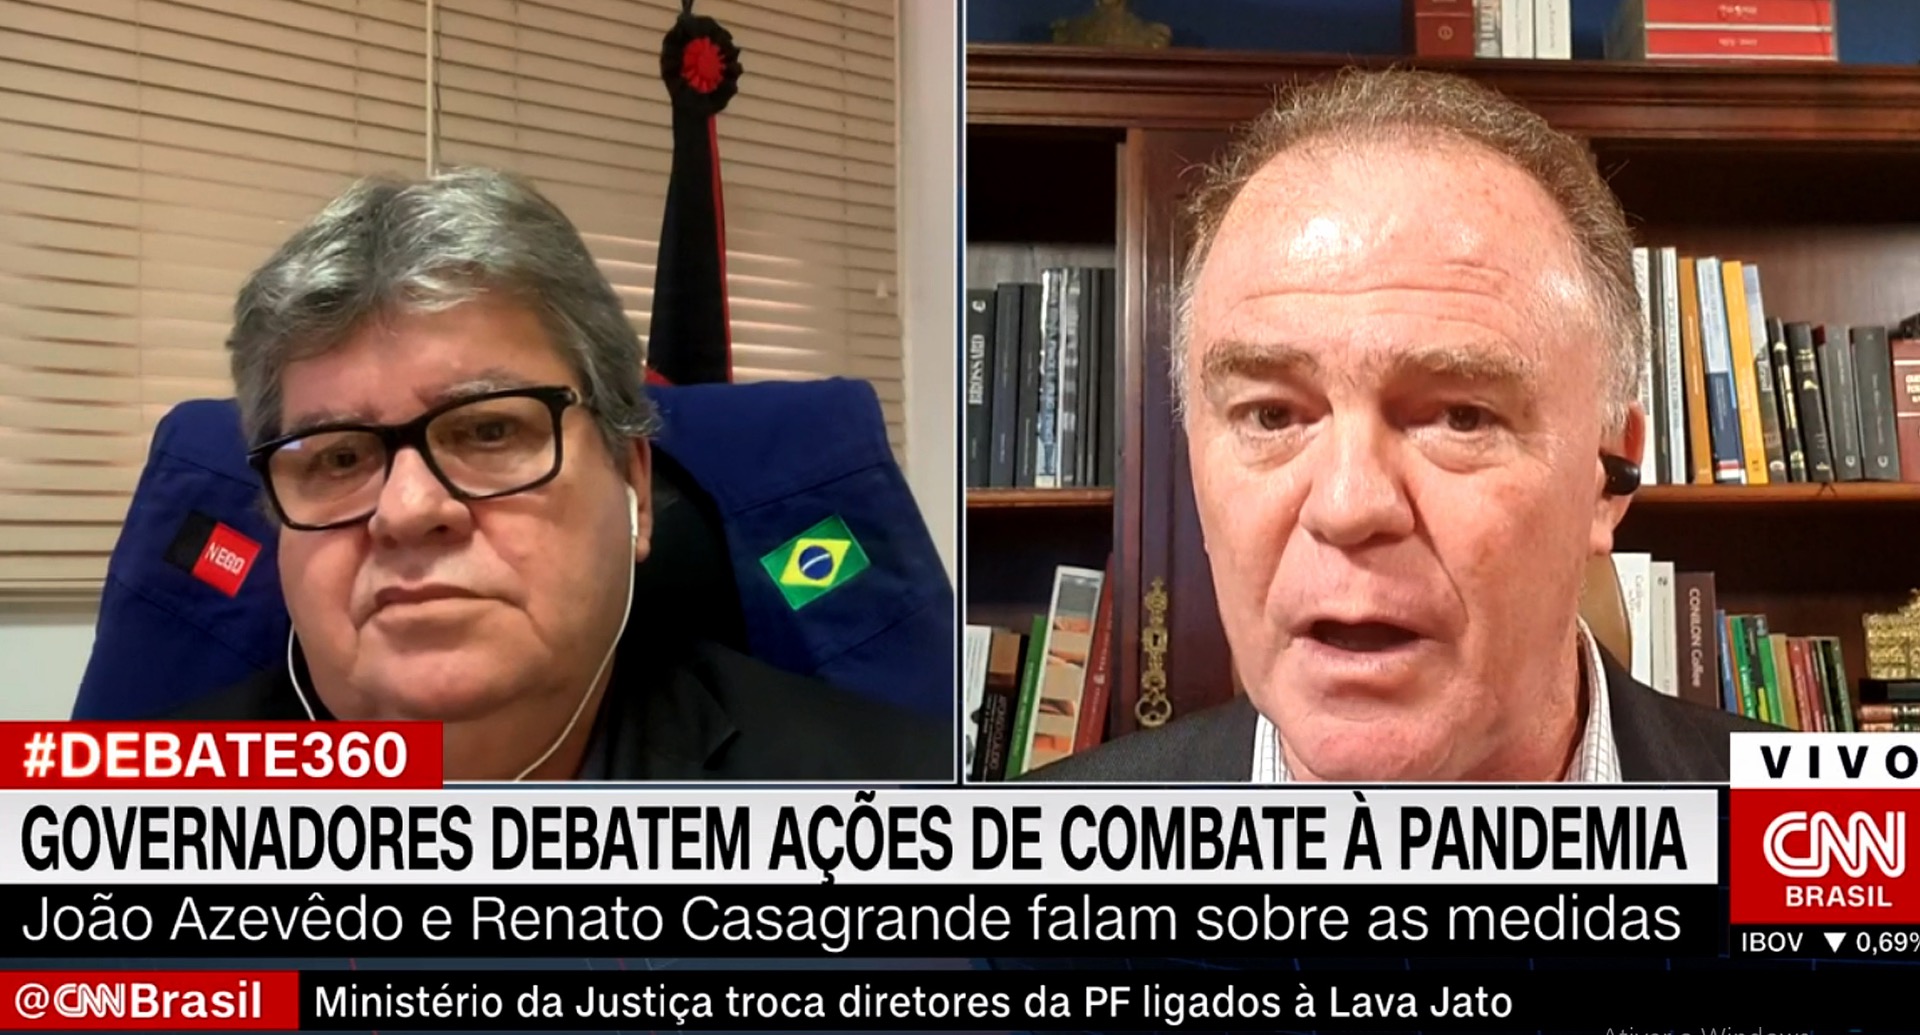 joao CNN Brasil (4).jpg